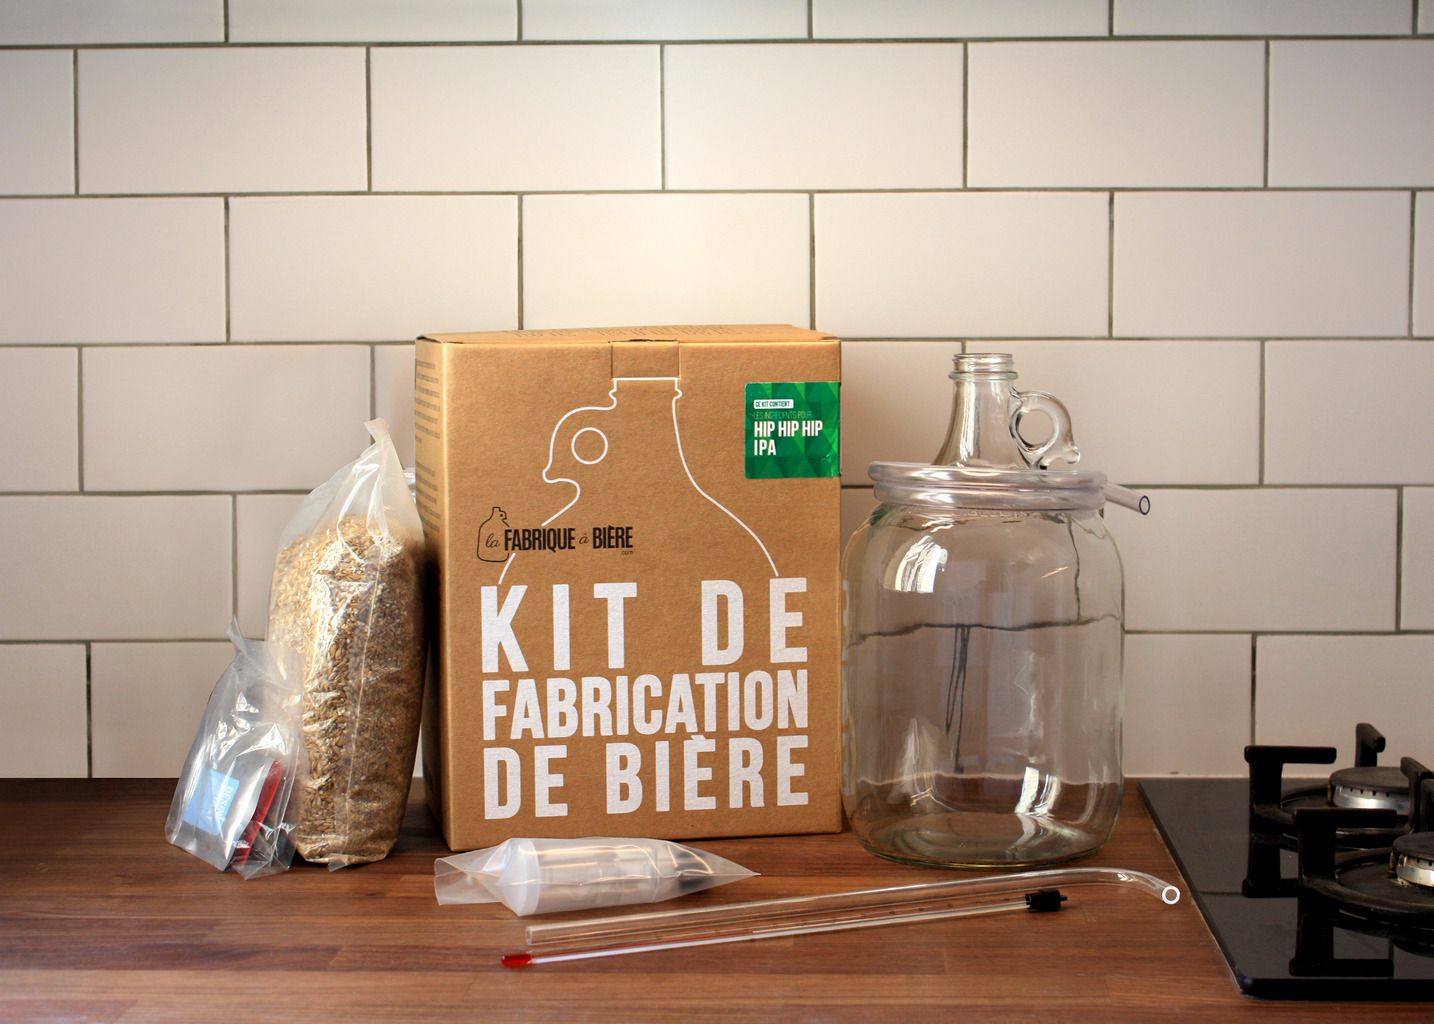 Belgian Xmas Beer - Home Brew Kit - La Fabrique à Bière